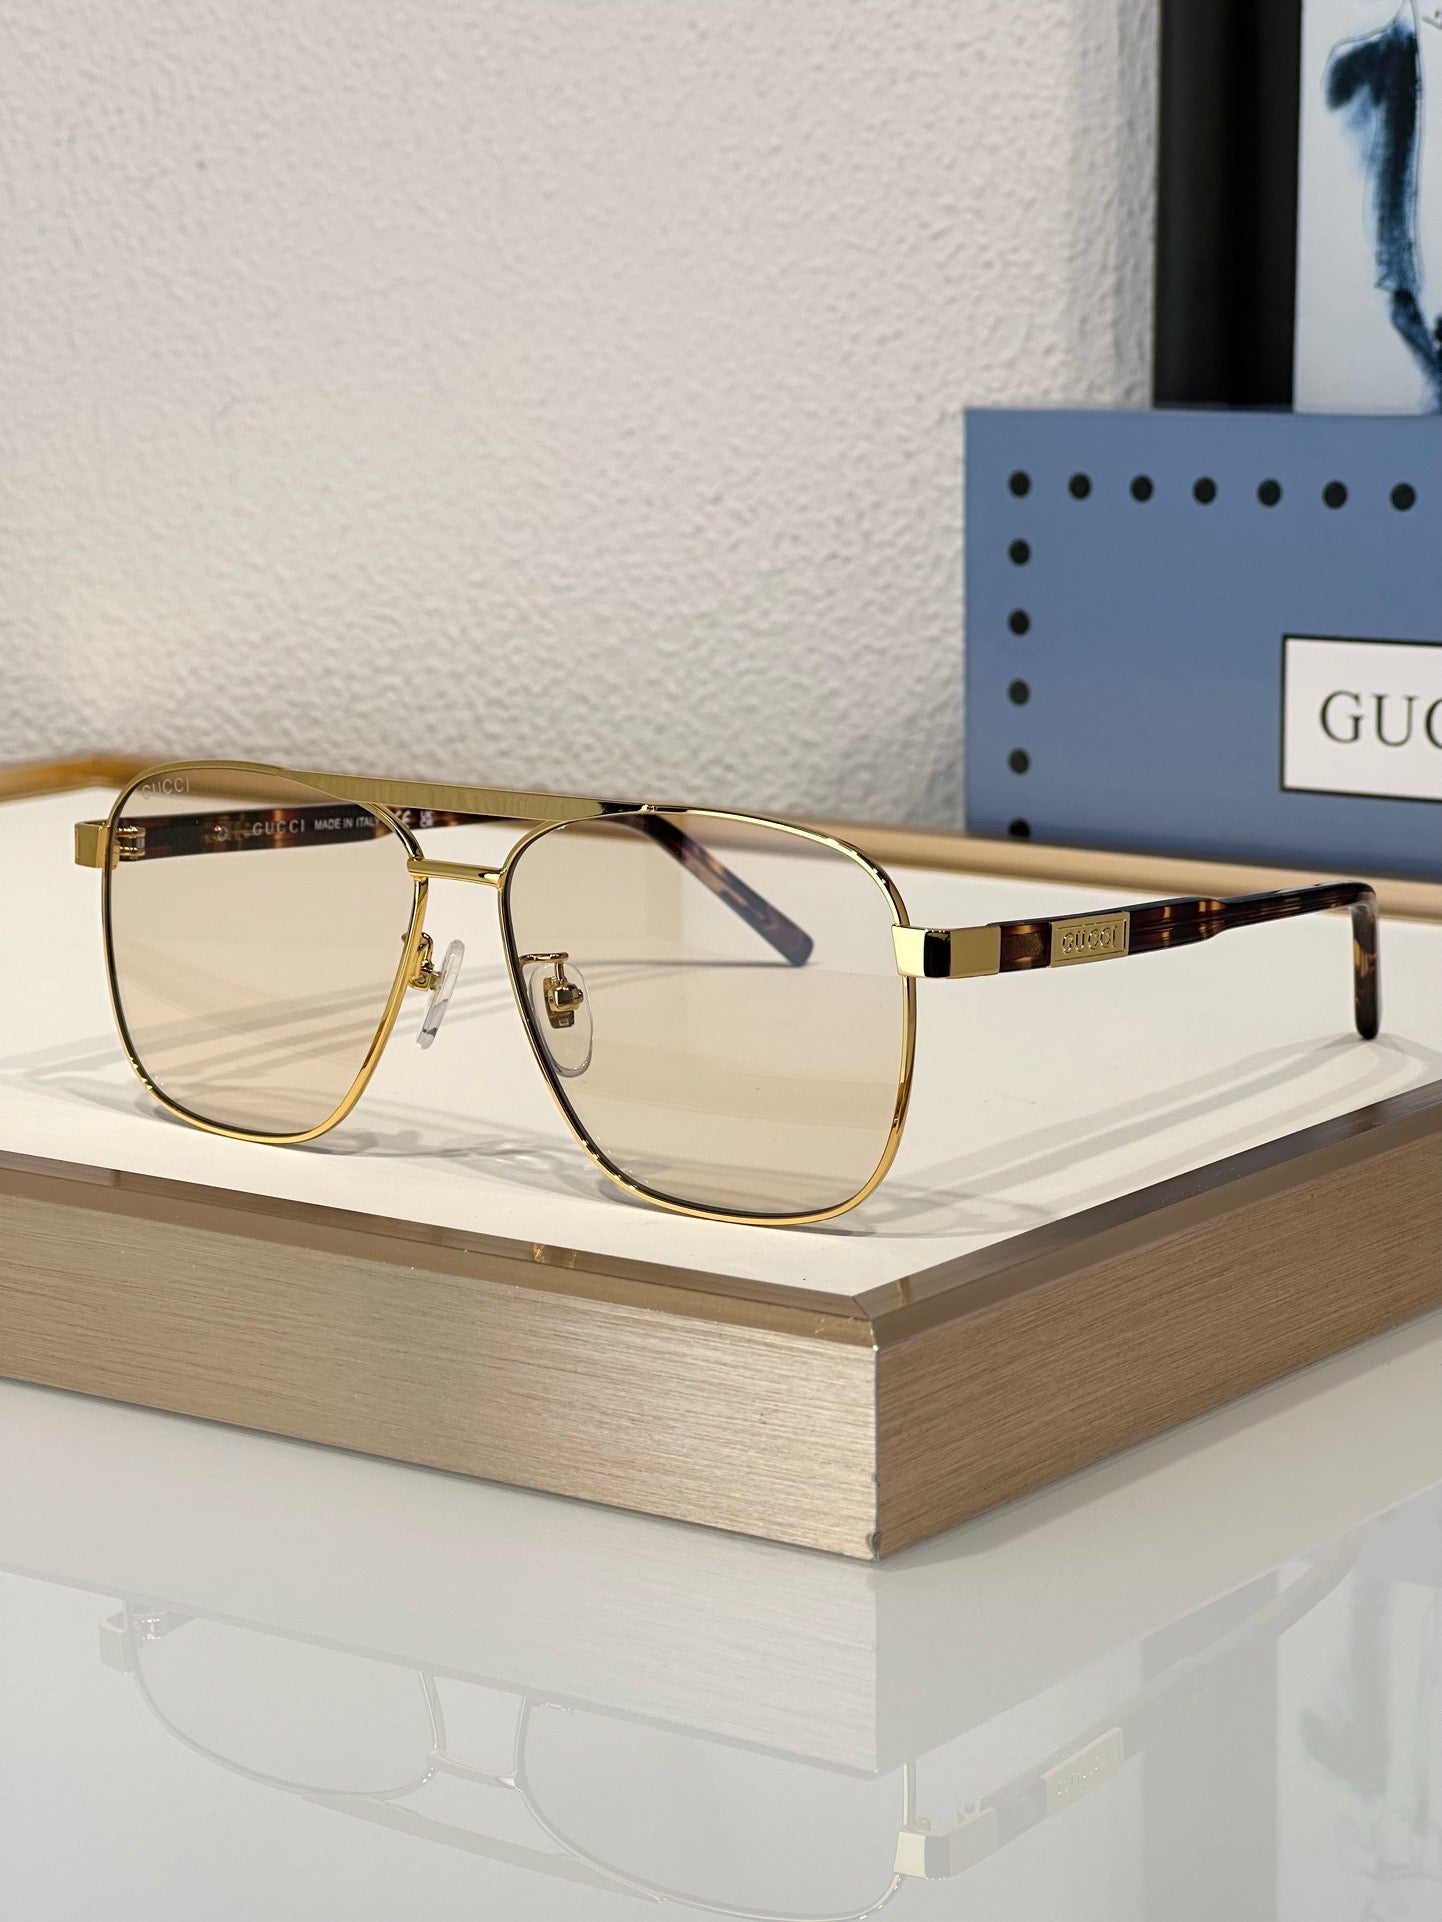 Gucci GG 1164 S Unisex Sunglasses ✨